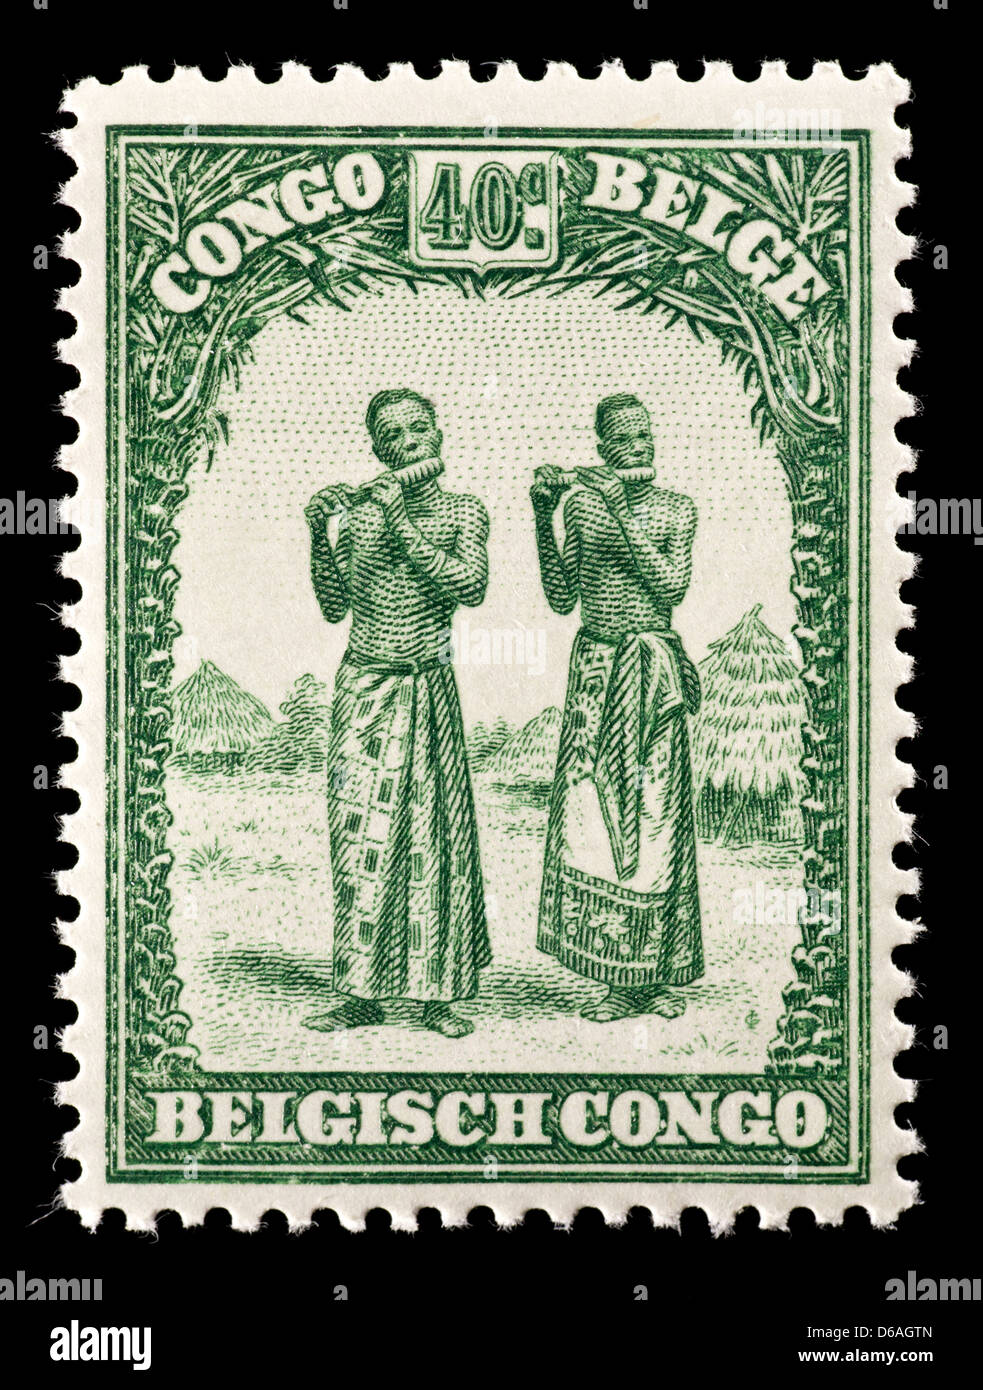 Briefmarke aus dem belgischen Kongo Darstellung einheimischen Männer, die Instrumente spielen. Stockfoto